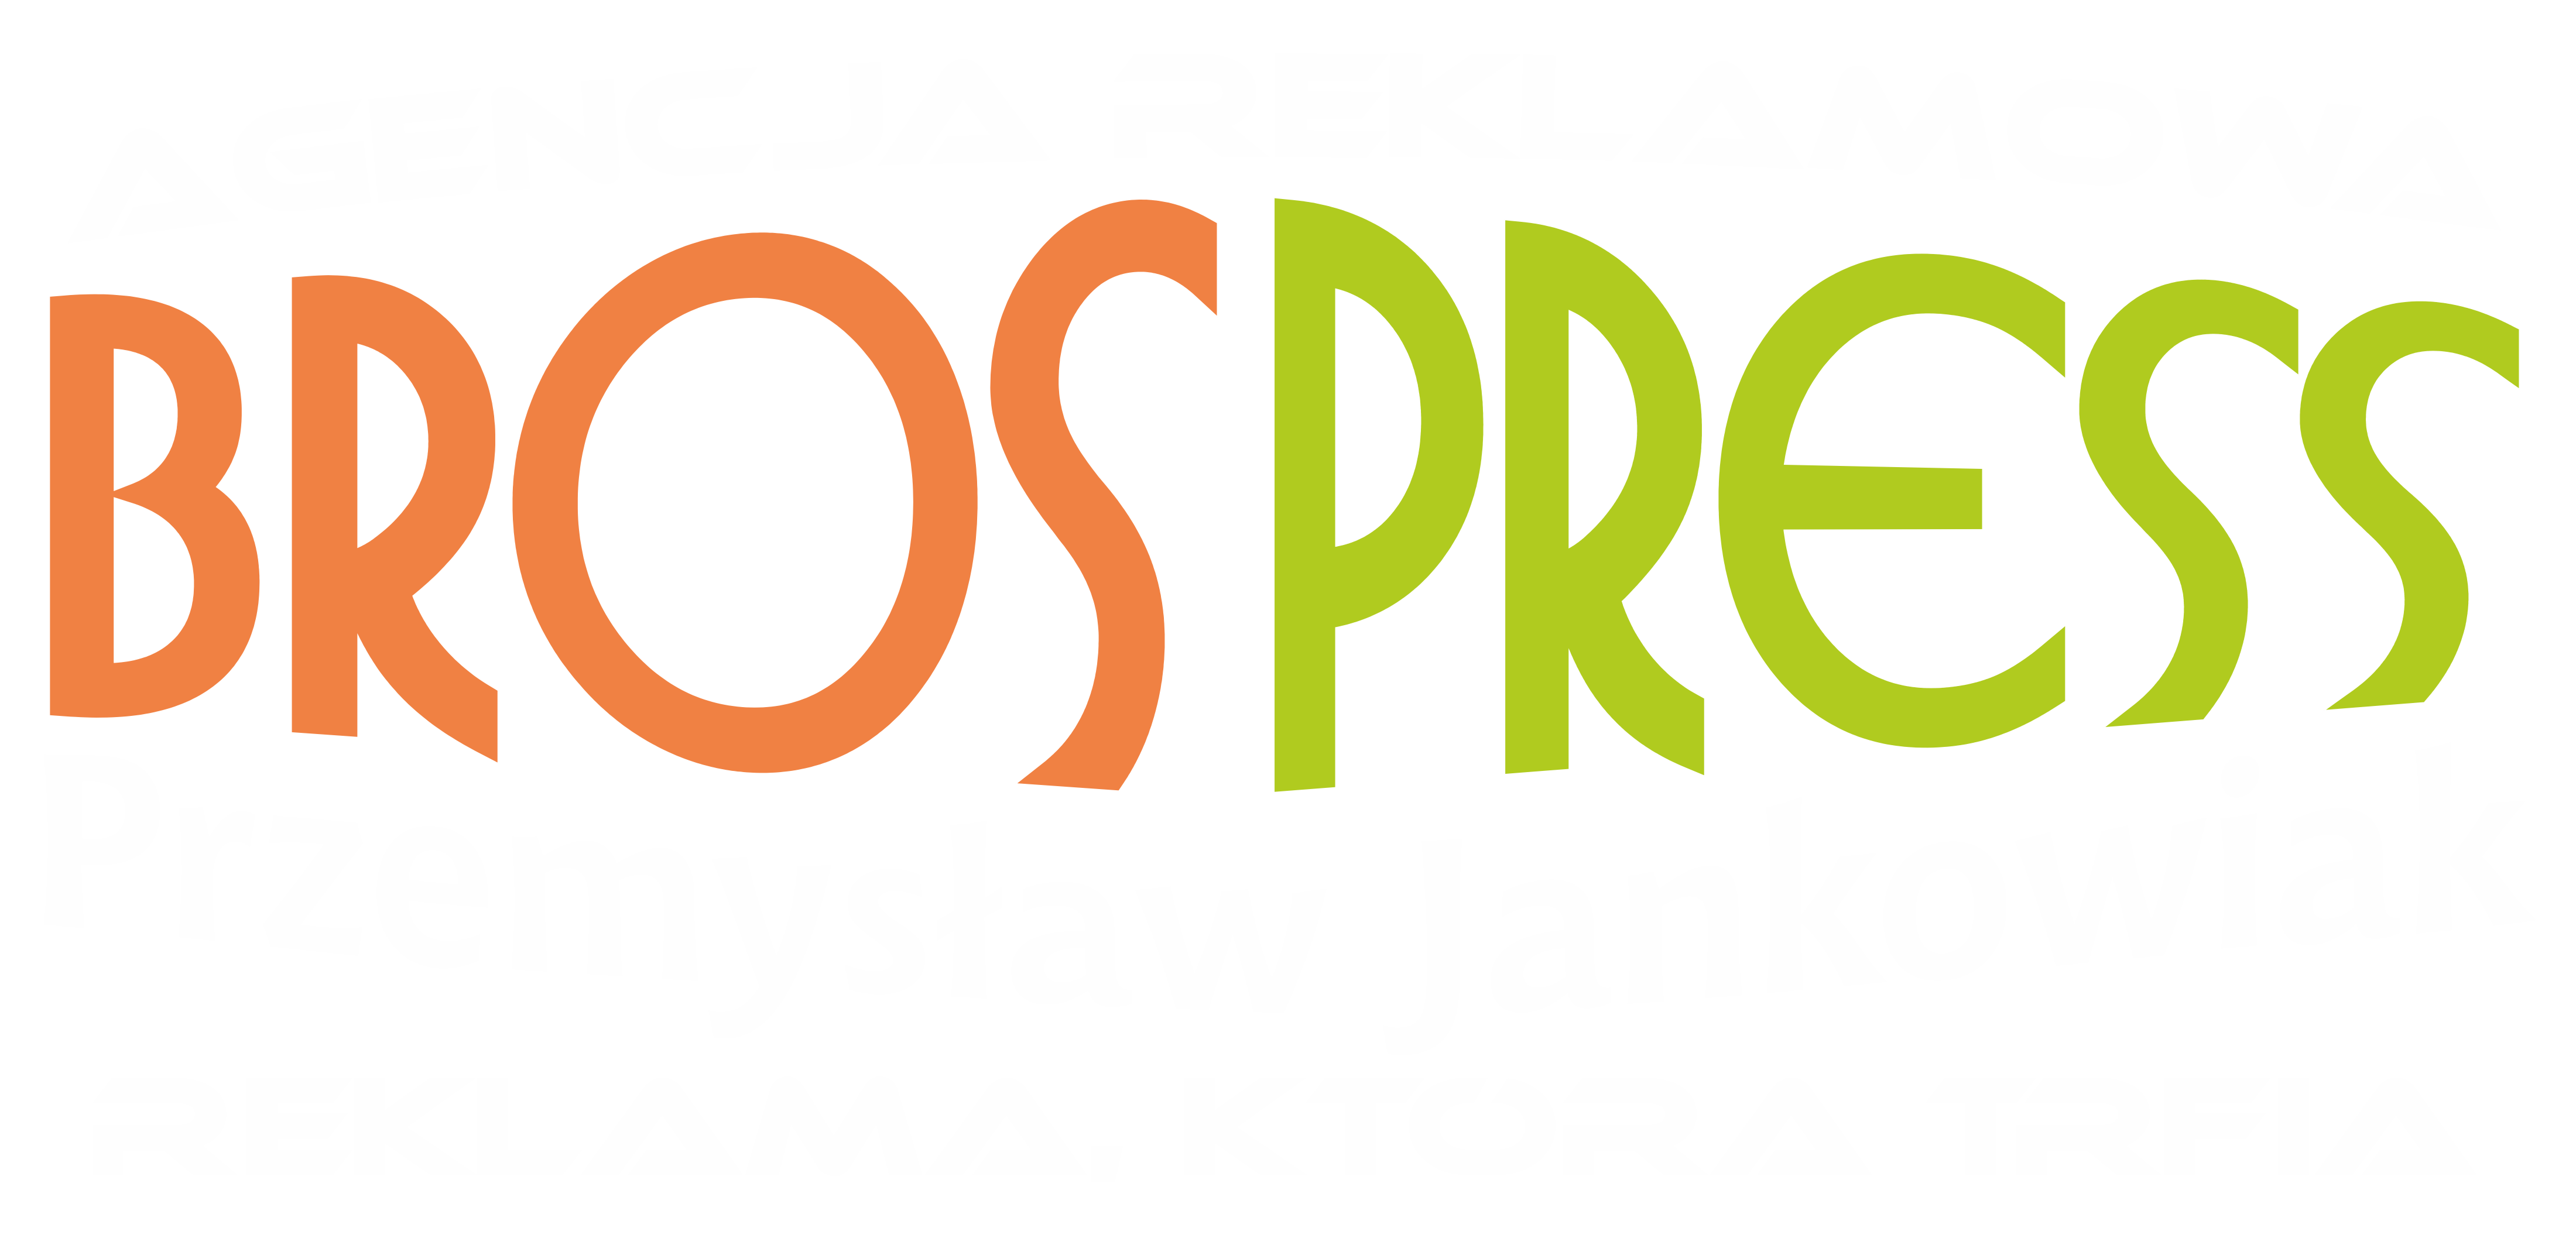 Bros Press Przemysław Jankowiak